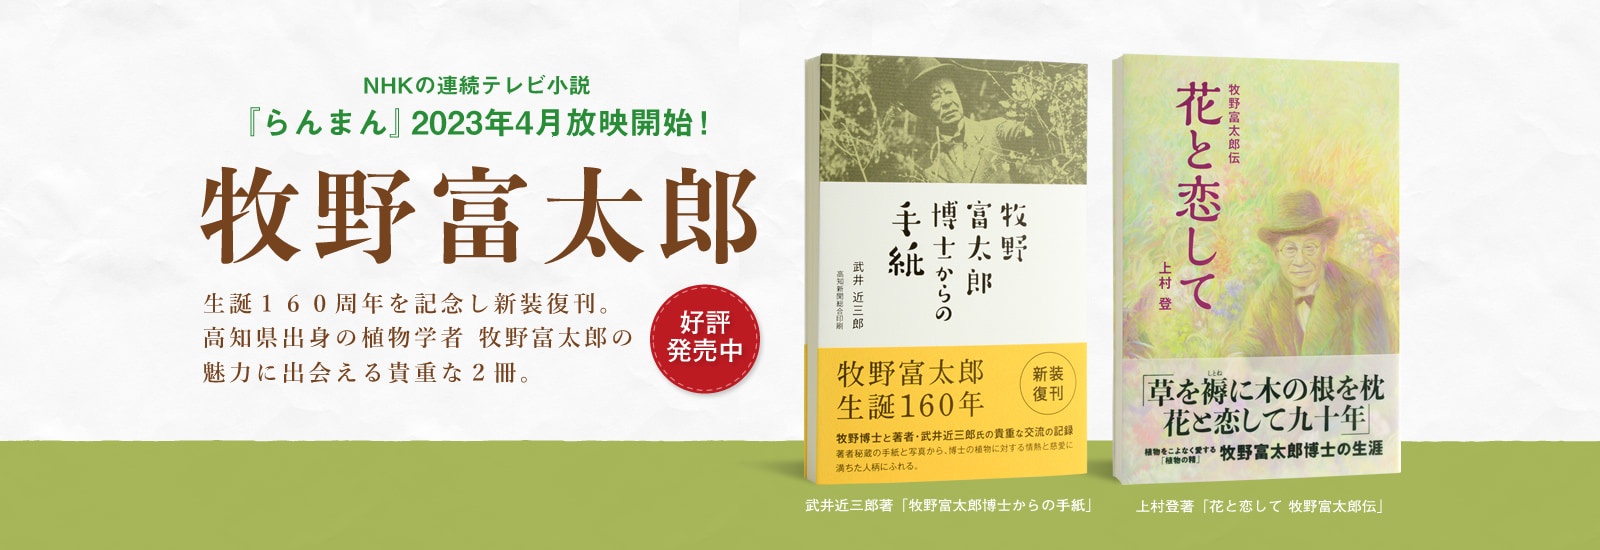 牧野富太郎生誕160周年を記念し新装復刊。高知県出身の植物学者 牧野富太郎の魅力に出会える貴重な２冊。